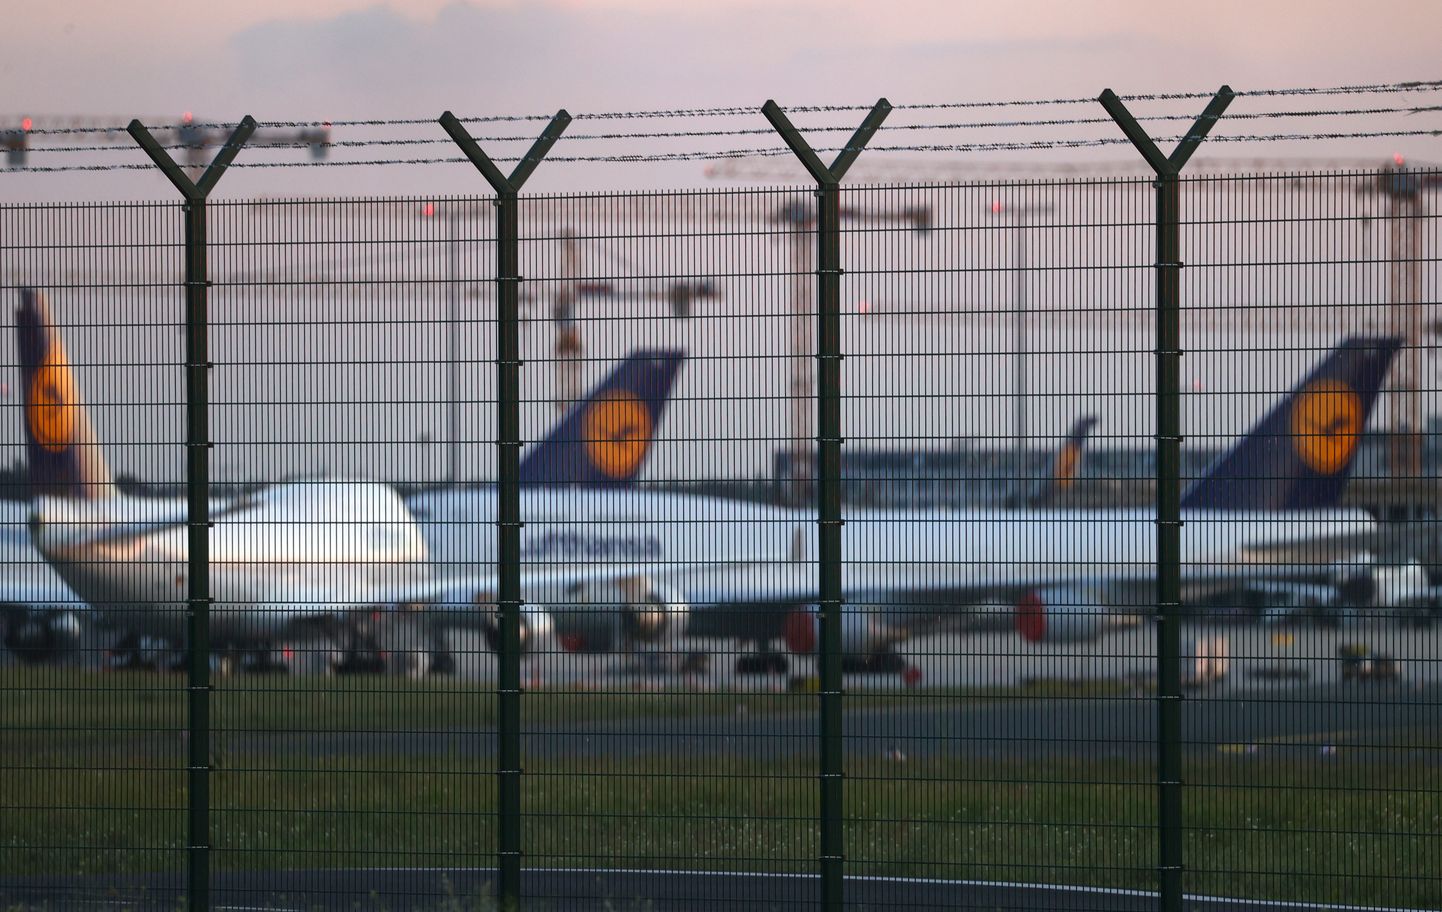 Lufthansa lennukid seisavad Frankfurdi lennuväljal.